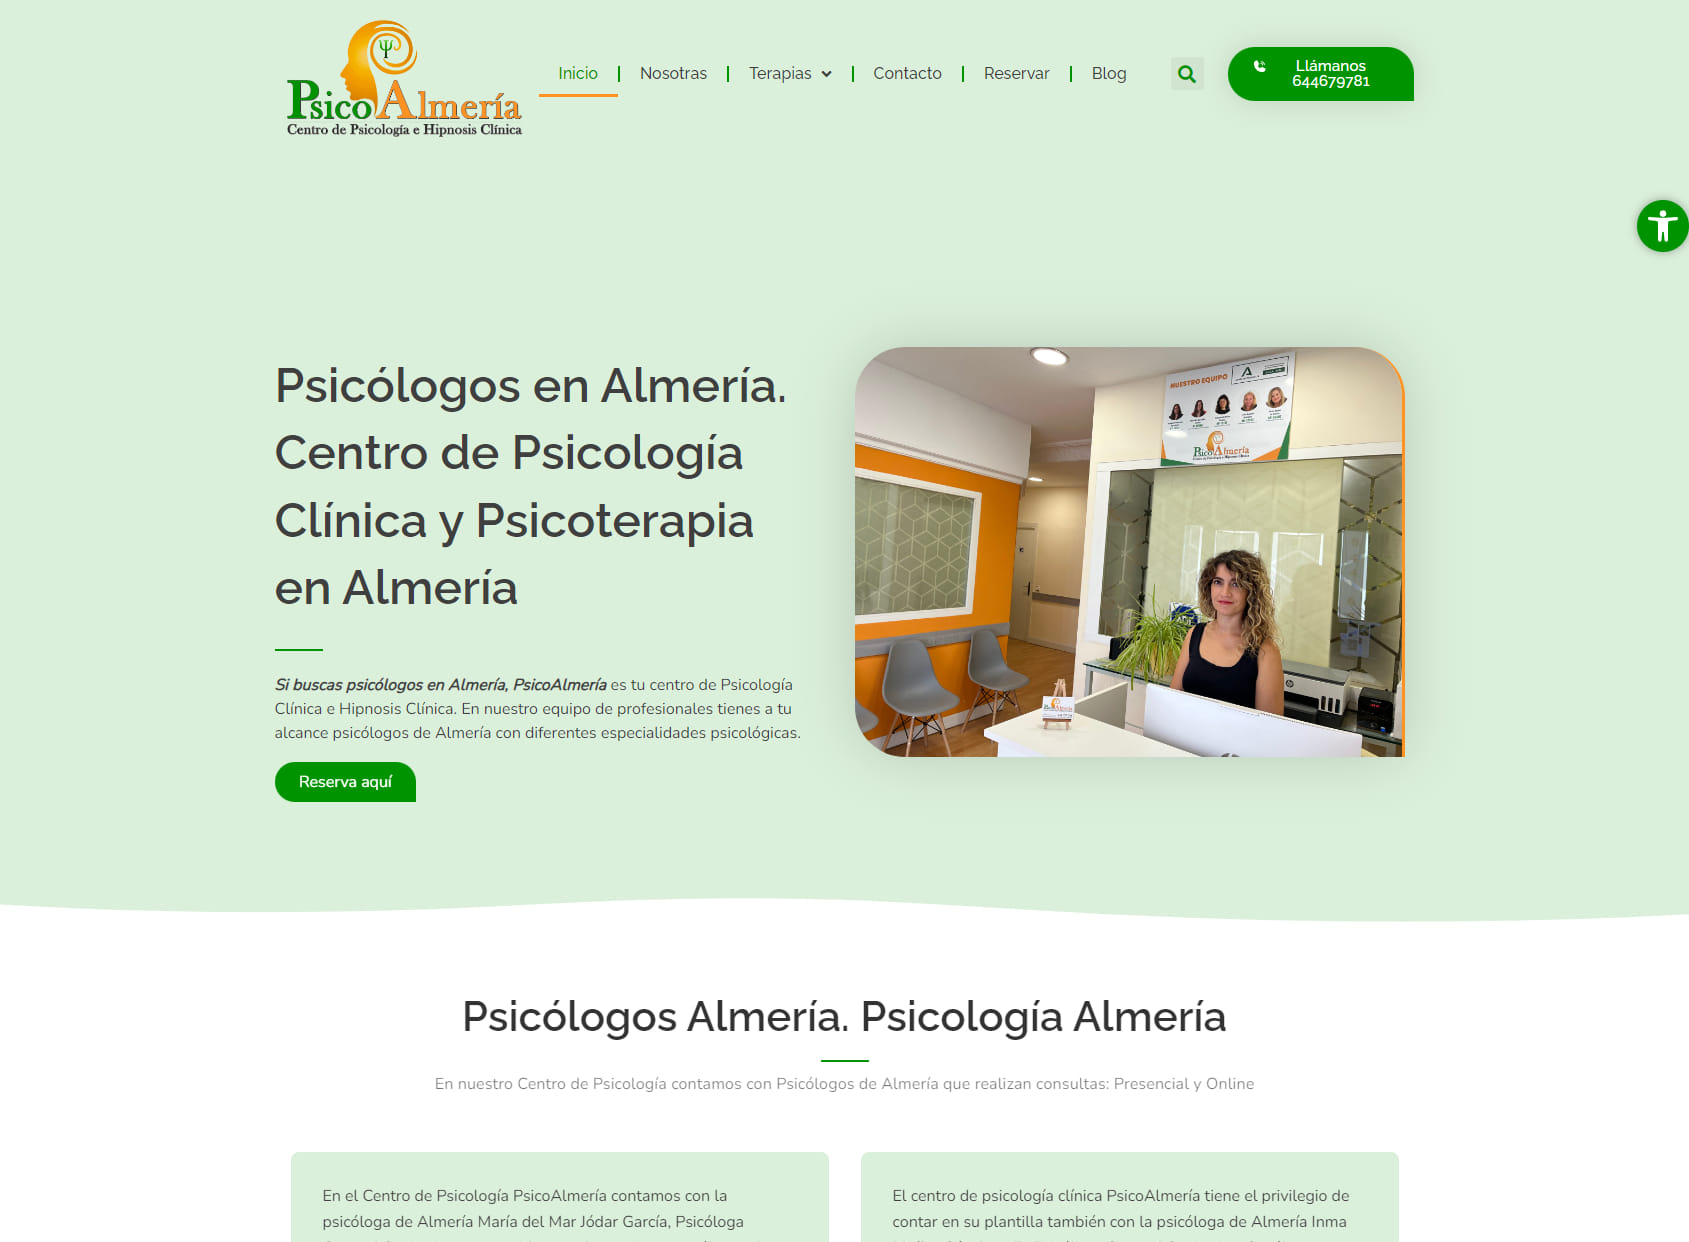 PSICOALMERIA / Psicólogos en Almería. Psicóloga Verónica Valderrama Hernández, propietaria.